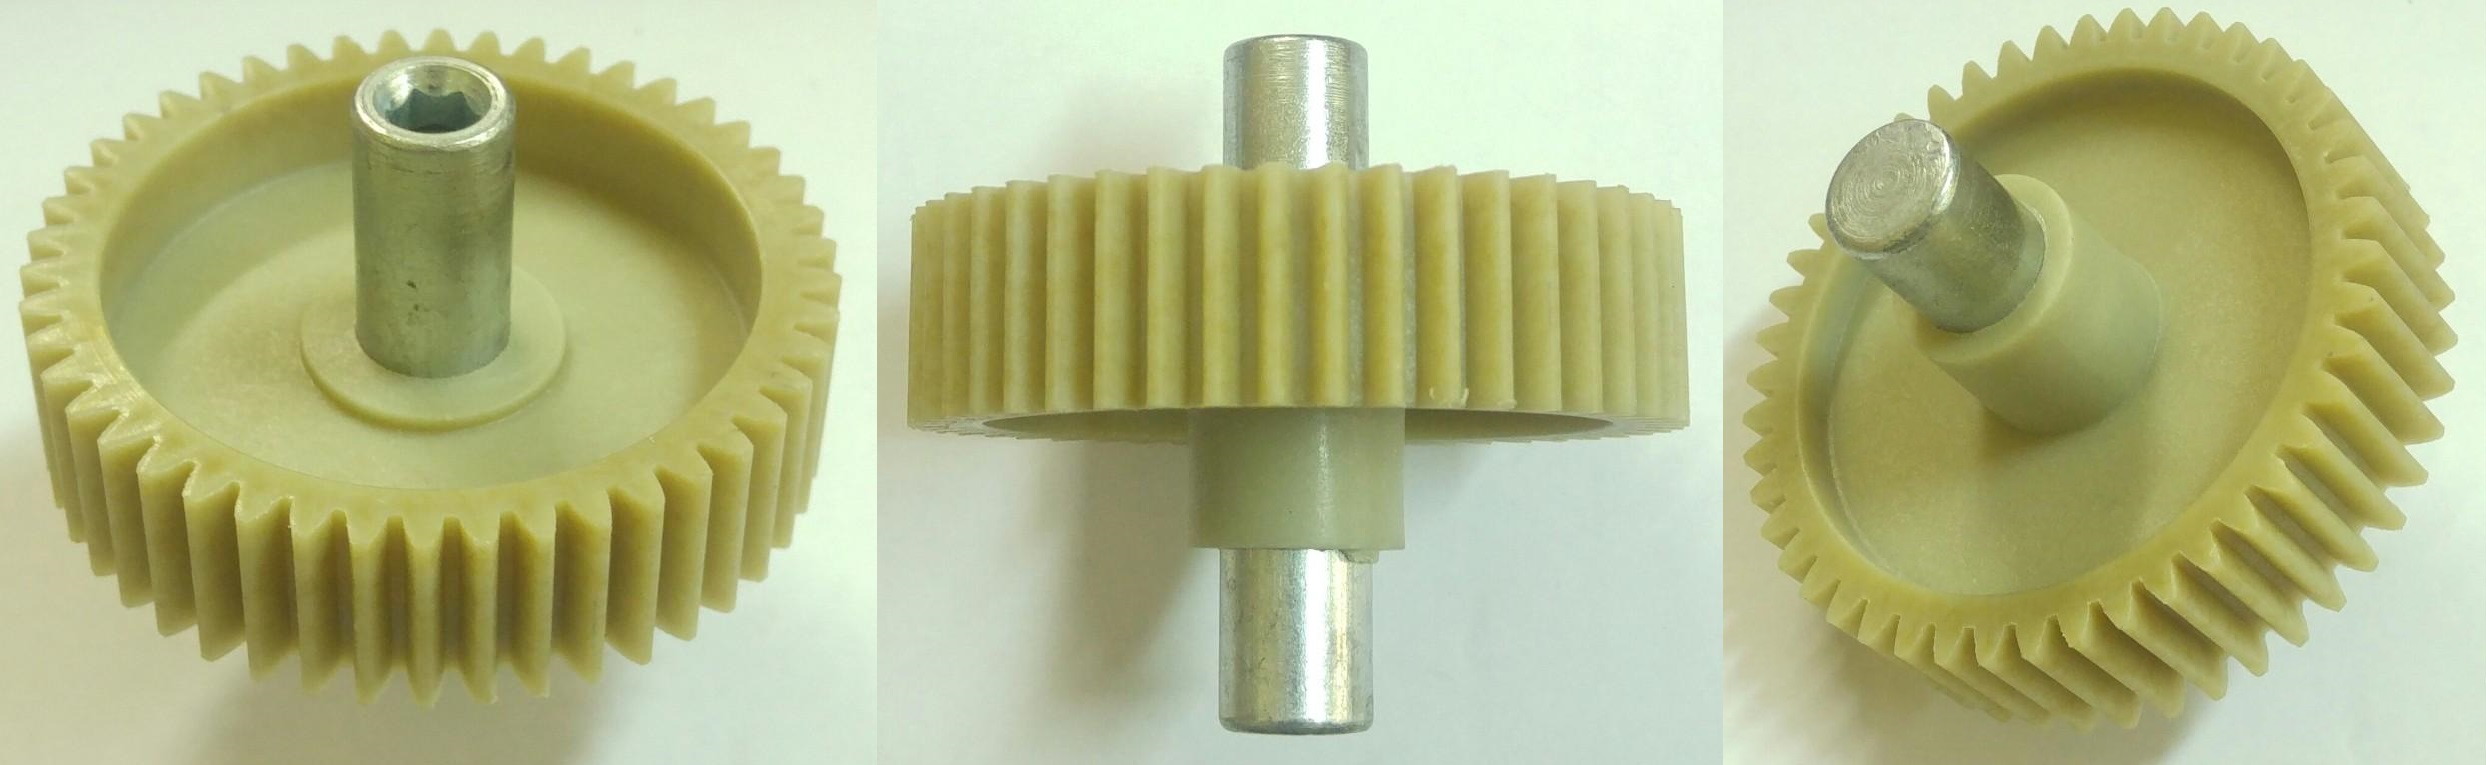 Шестерня Moulinex шестигранник внутрь, D=82/23/16mm, H72/53/22, зуб-46шт., зам. MS023